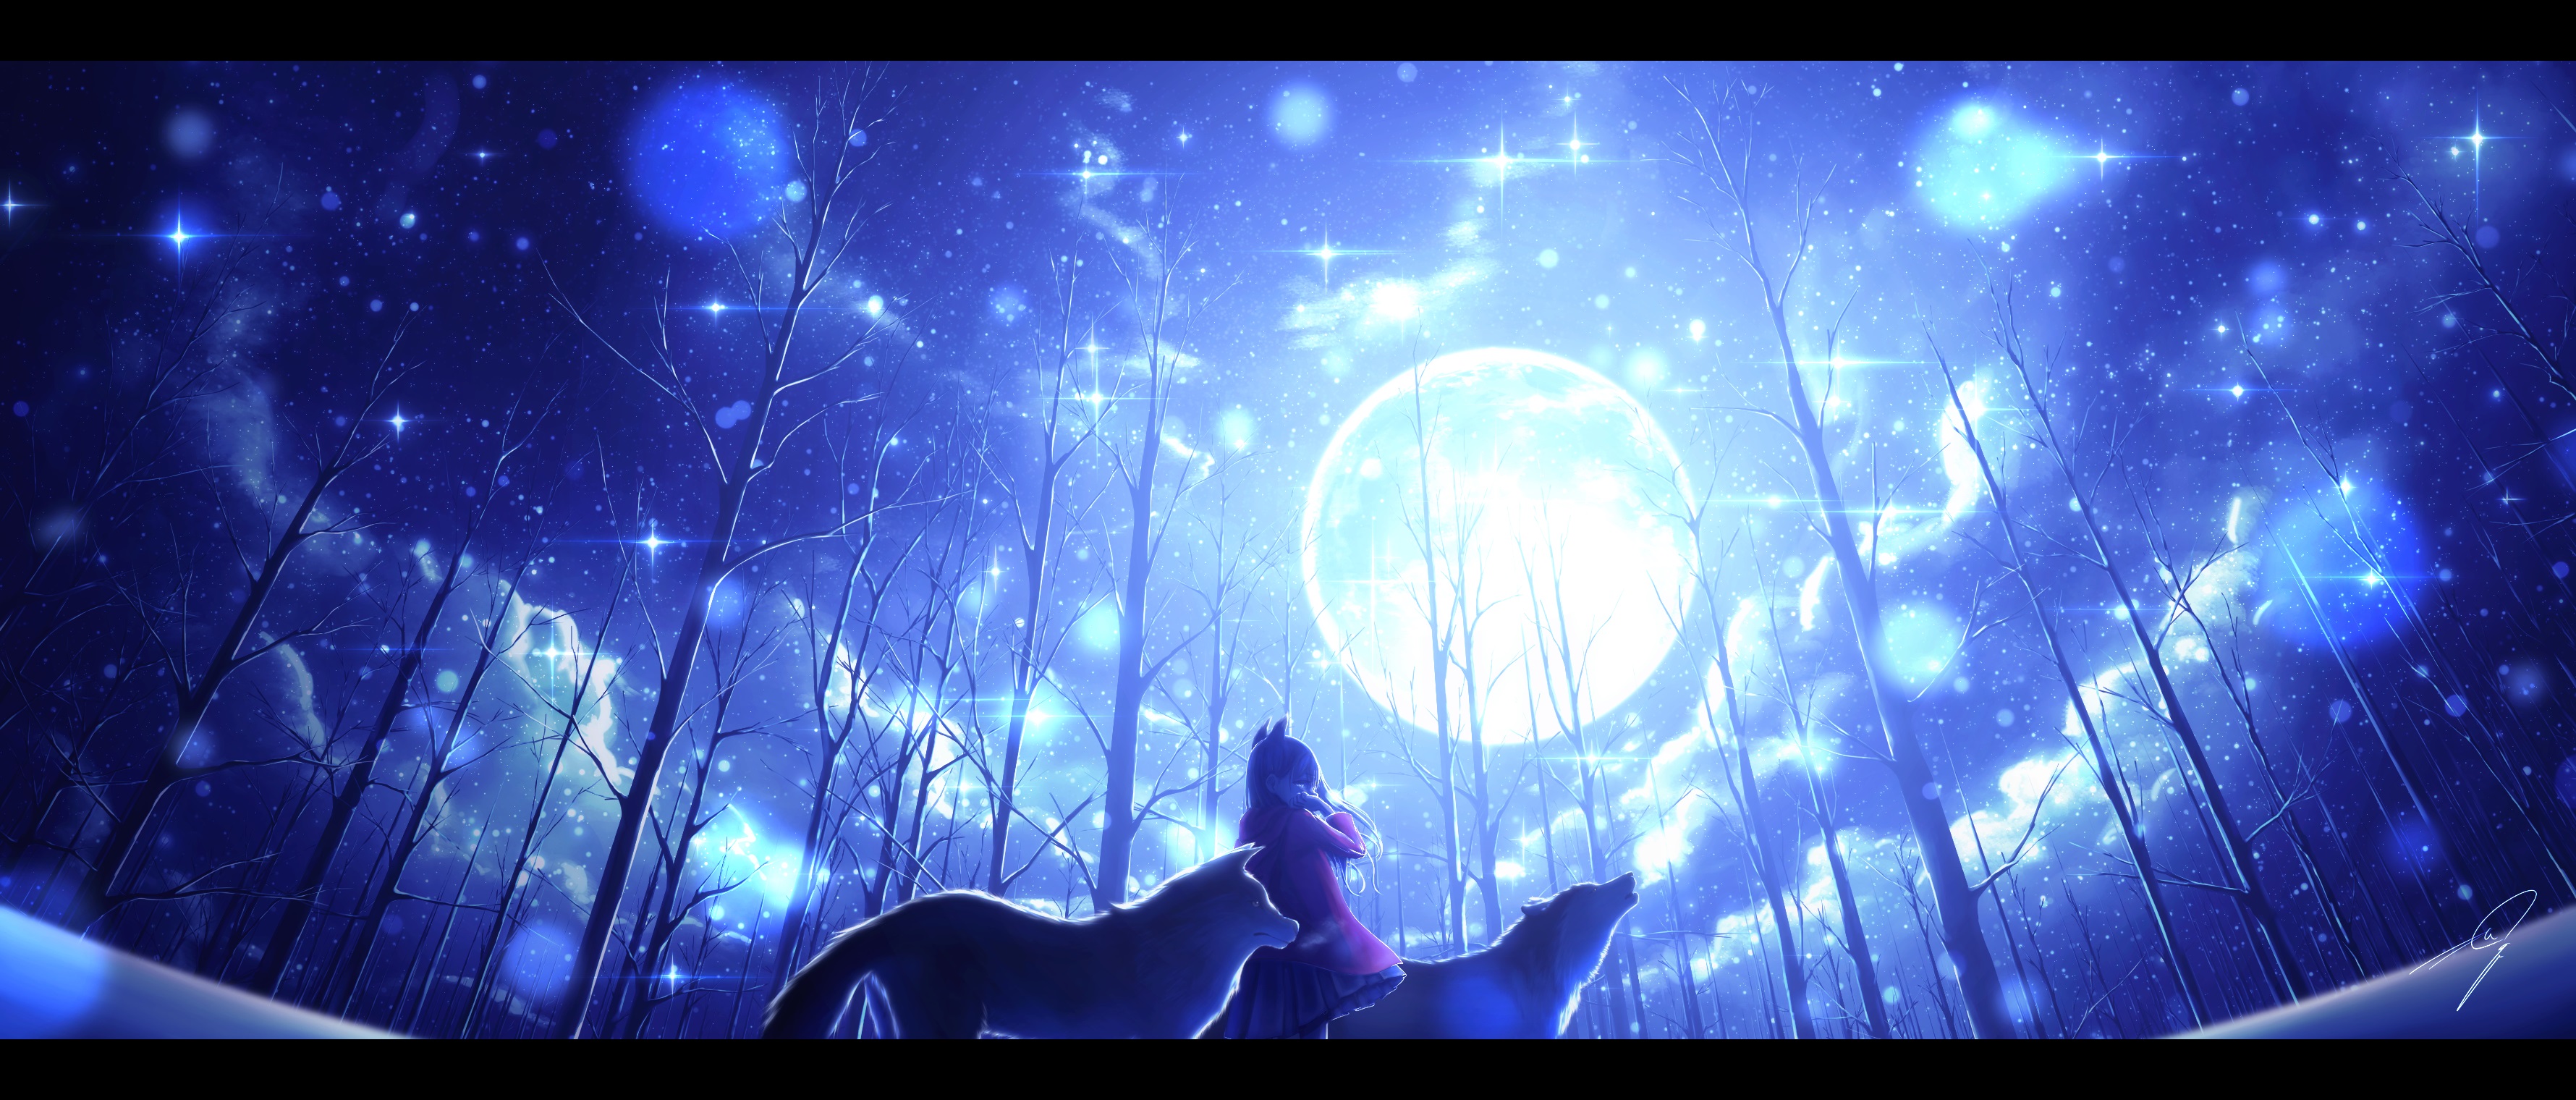 Anime Moon HD Wallpaper by Nengoro